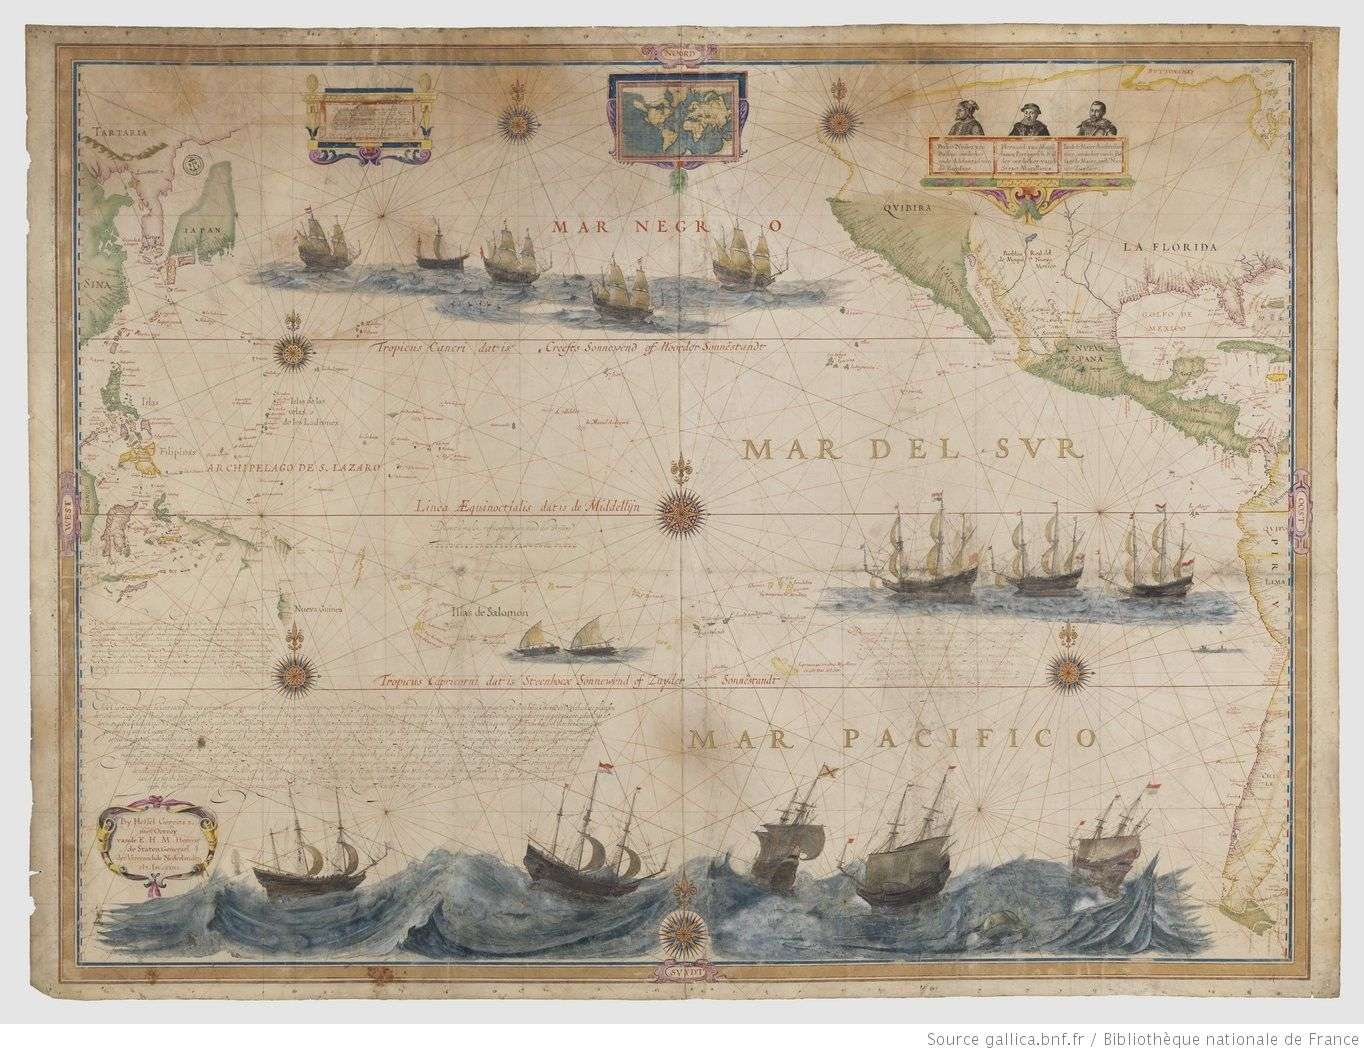 Hessel Gerritsz, Mar del Sur. Mar Pacifico, carte marine sur parchemin, 107 x 141 cm, Paris, Bibliothèque Nationale de France